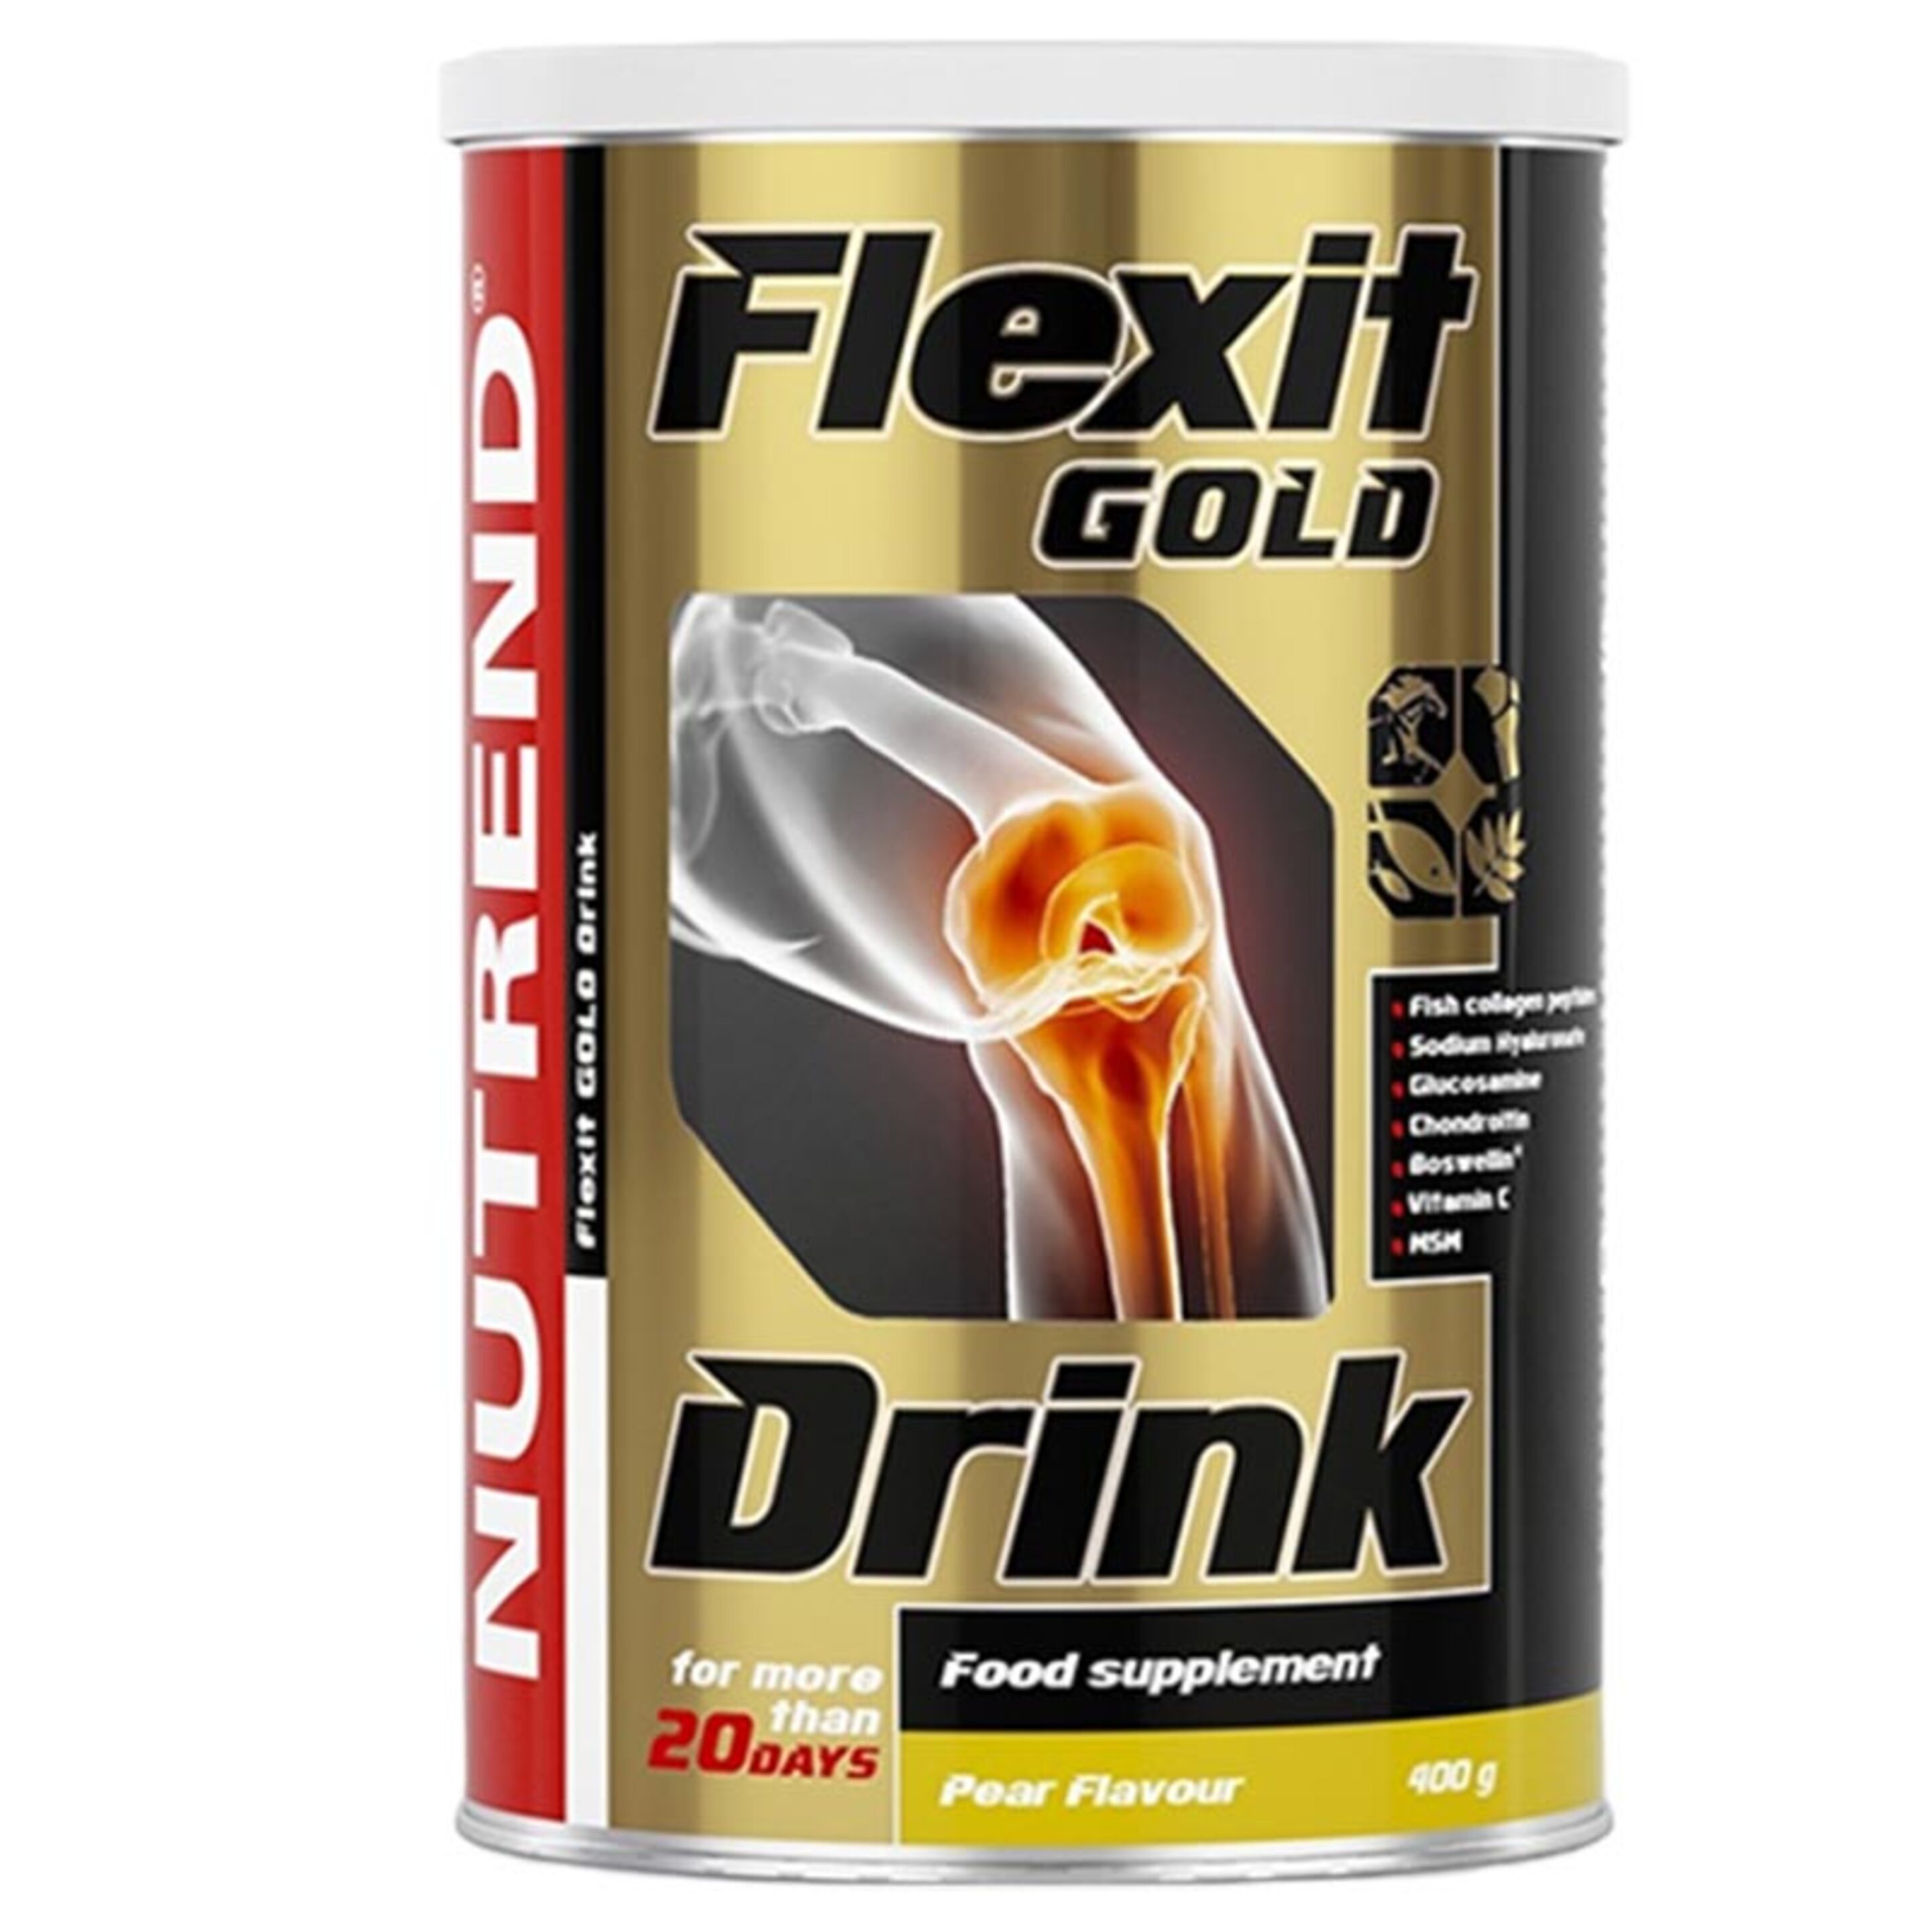 Flexit Gold Drink - 400g - Nutrend -  - 